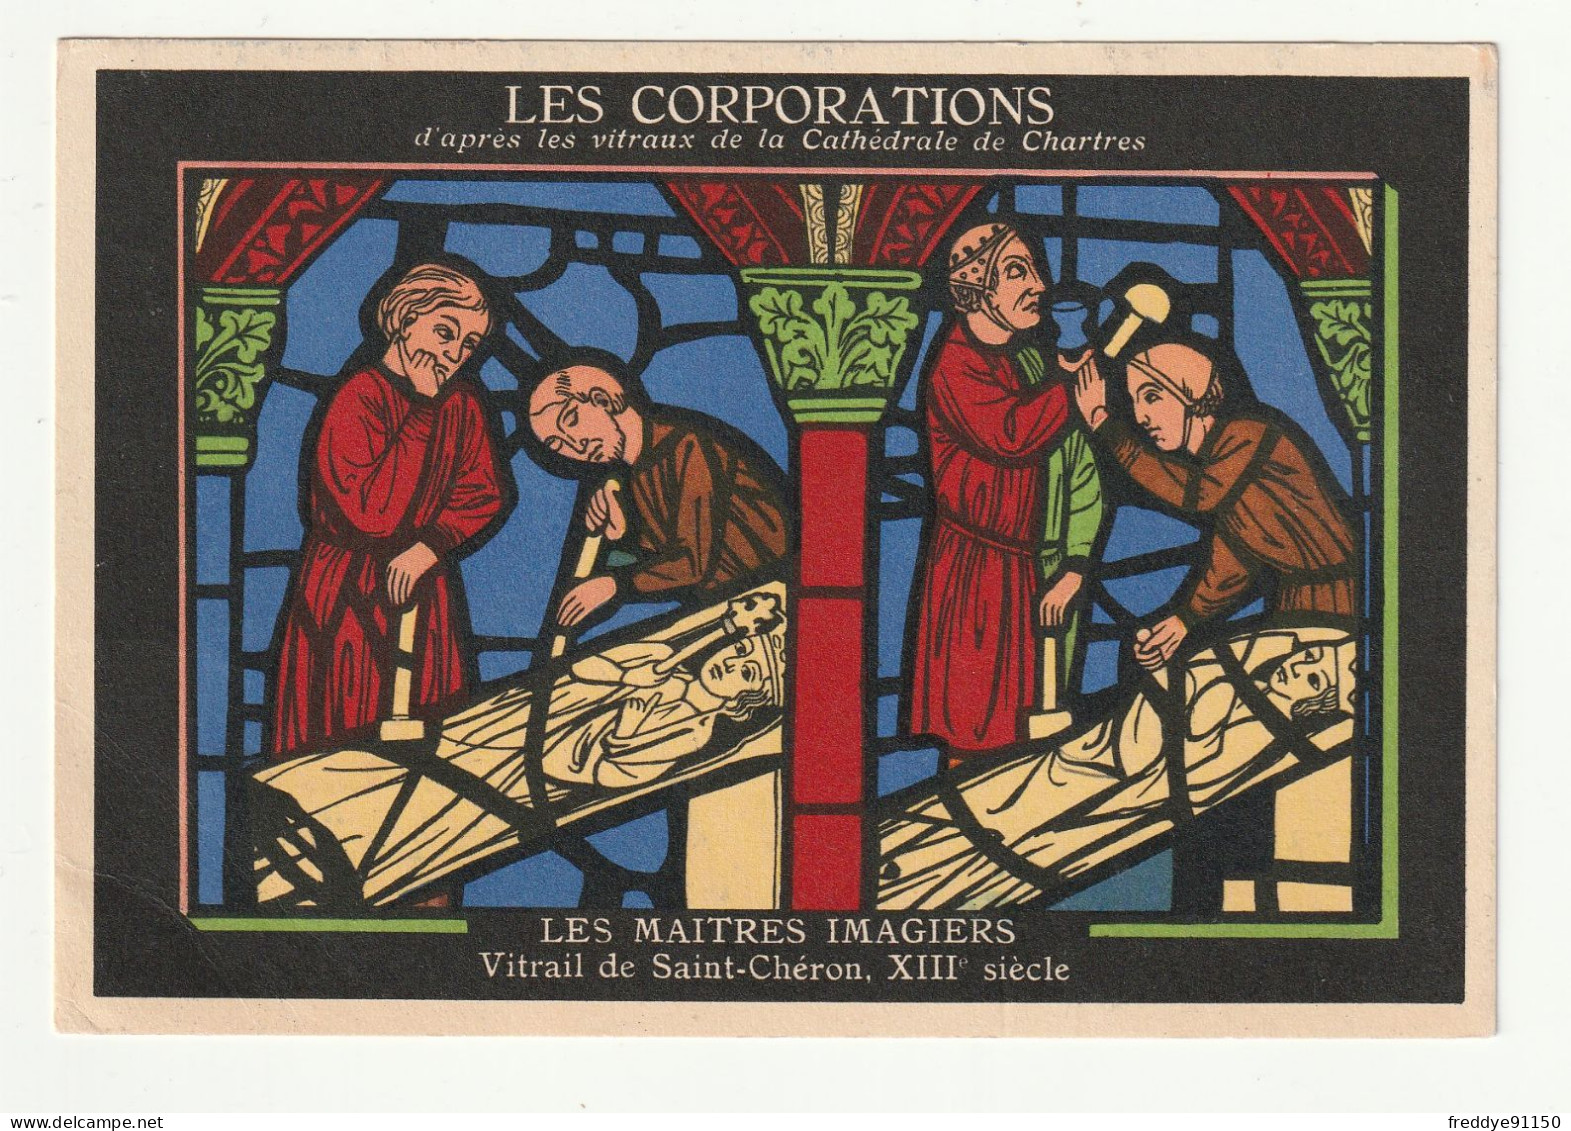 28 . Chartres . Publicite Aspirine  . Les Corporations D'apres Les Vitraux De La Cathedrale . Les Maitres Imagiers - Chartres